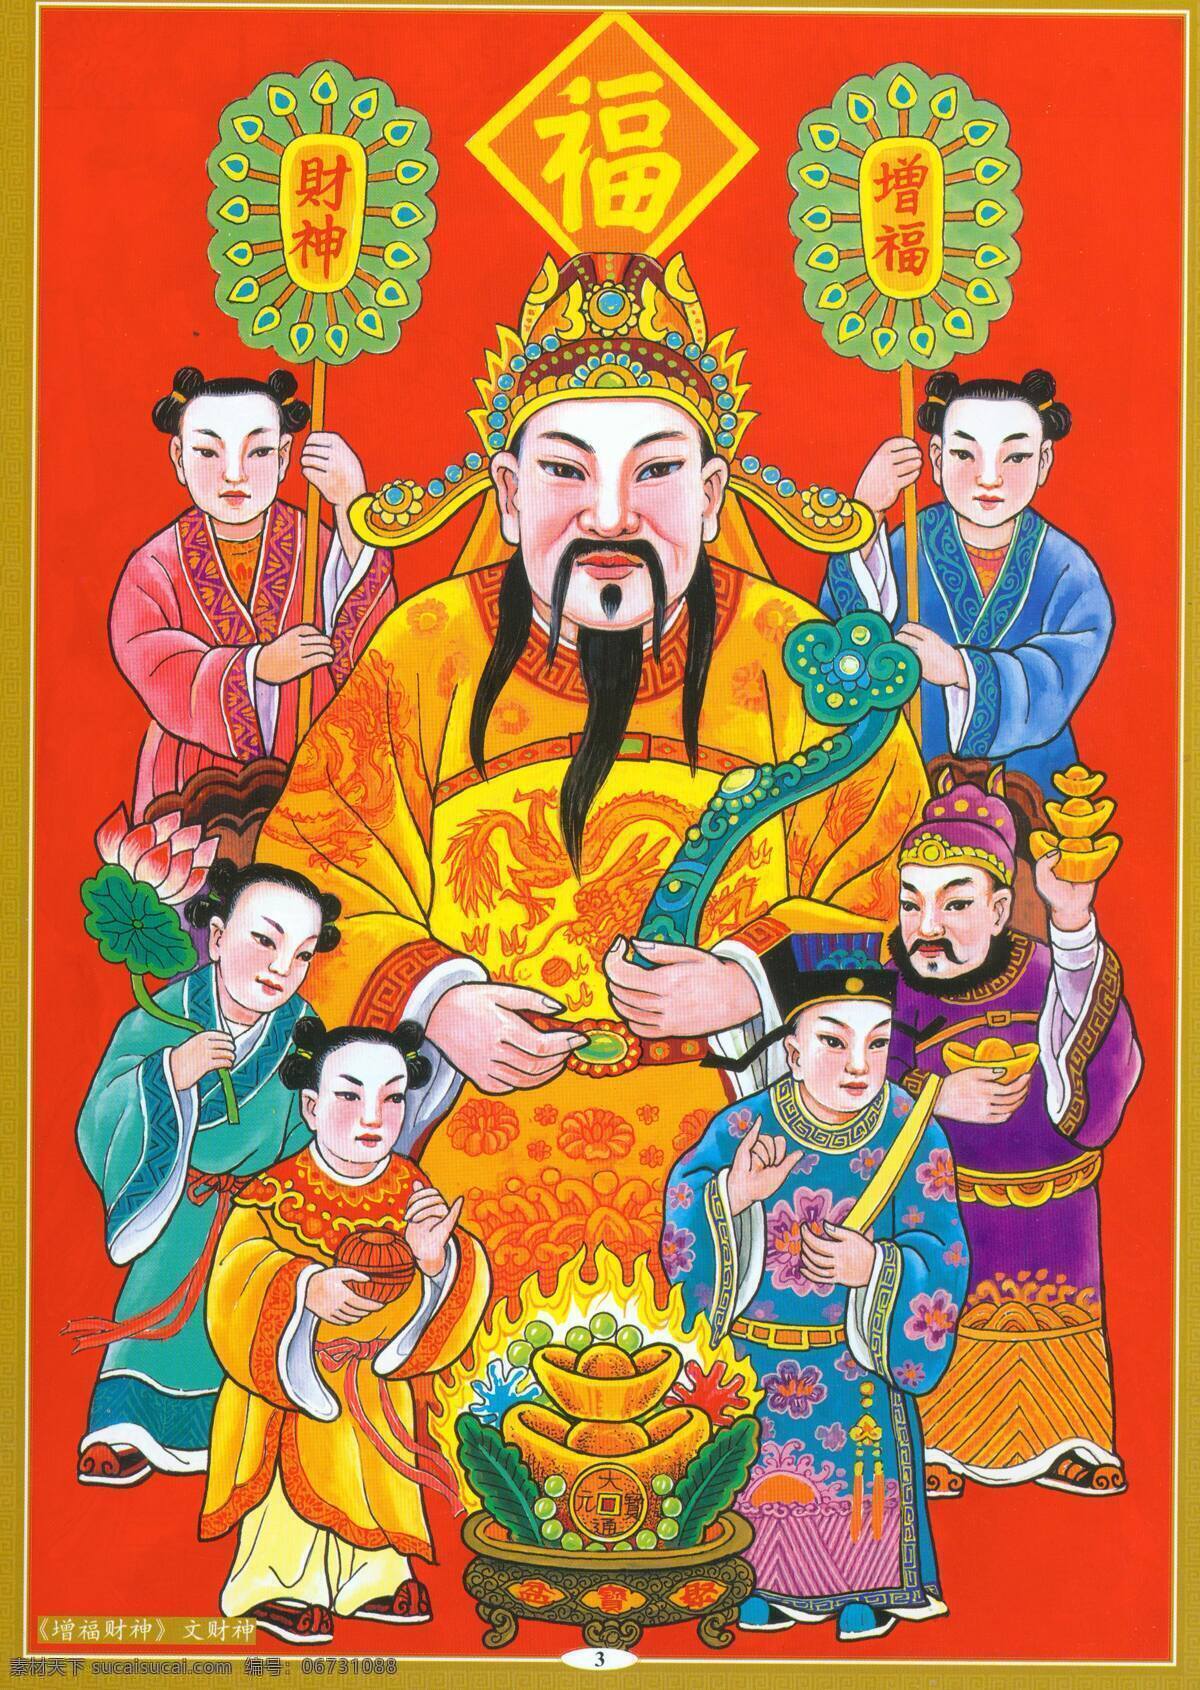 增 福 财神 文 设计素材 神仙佛像 中国画篇 书画美术 红色